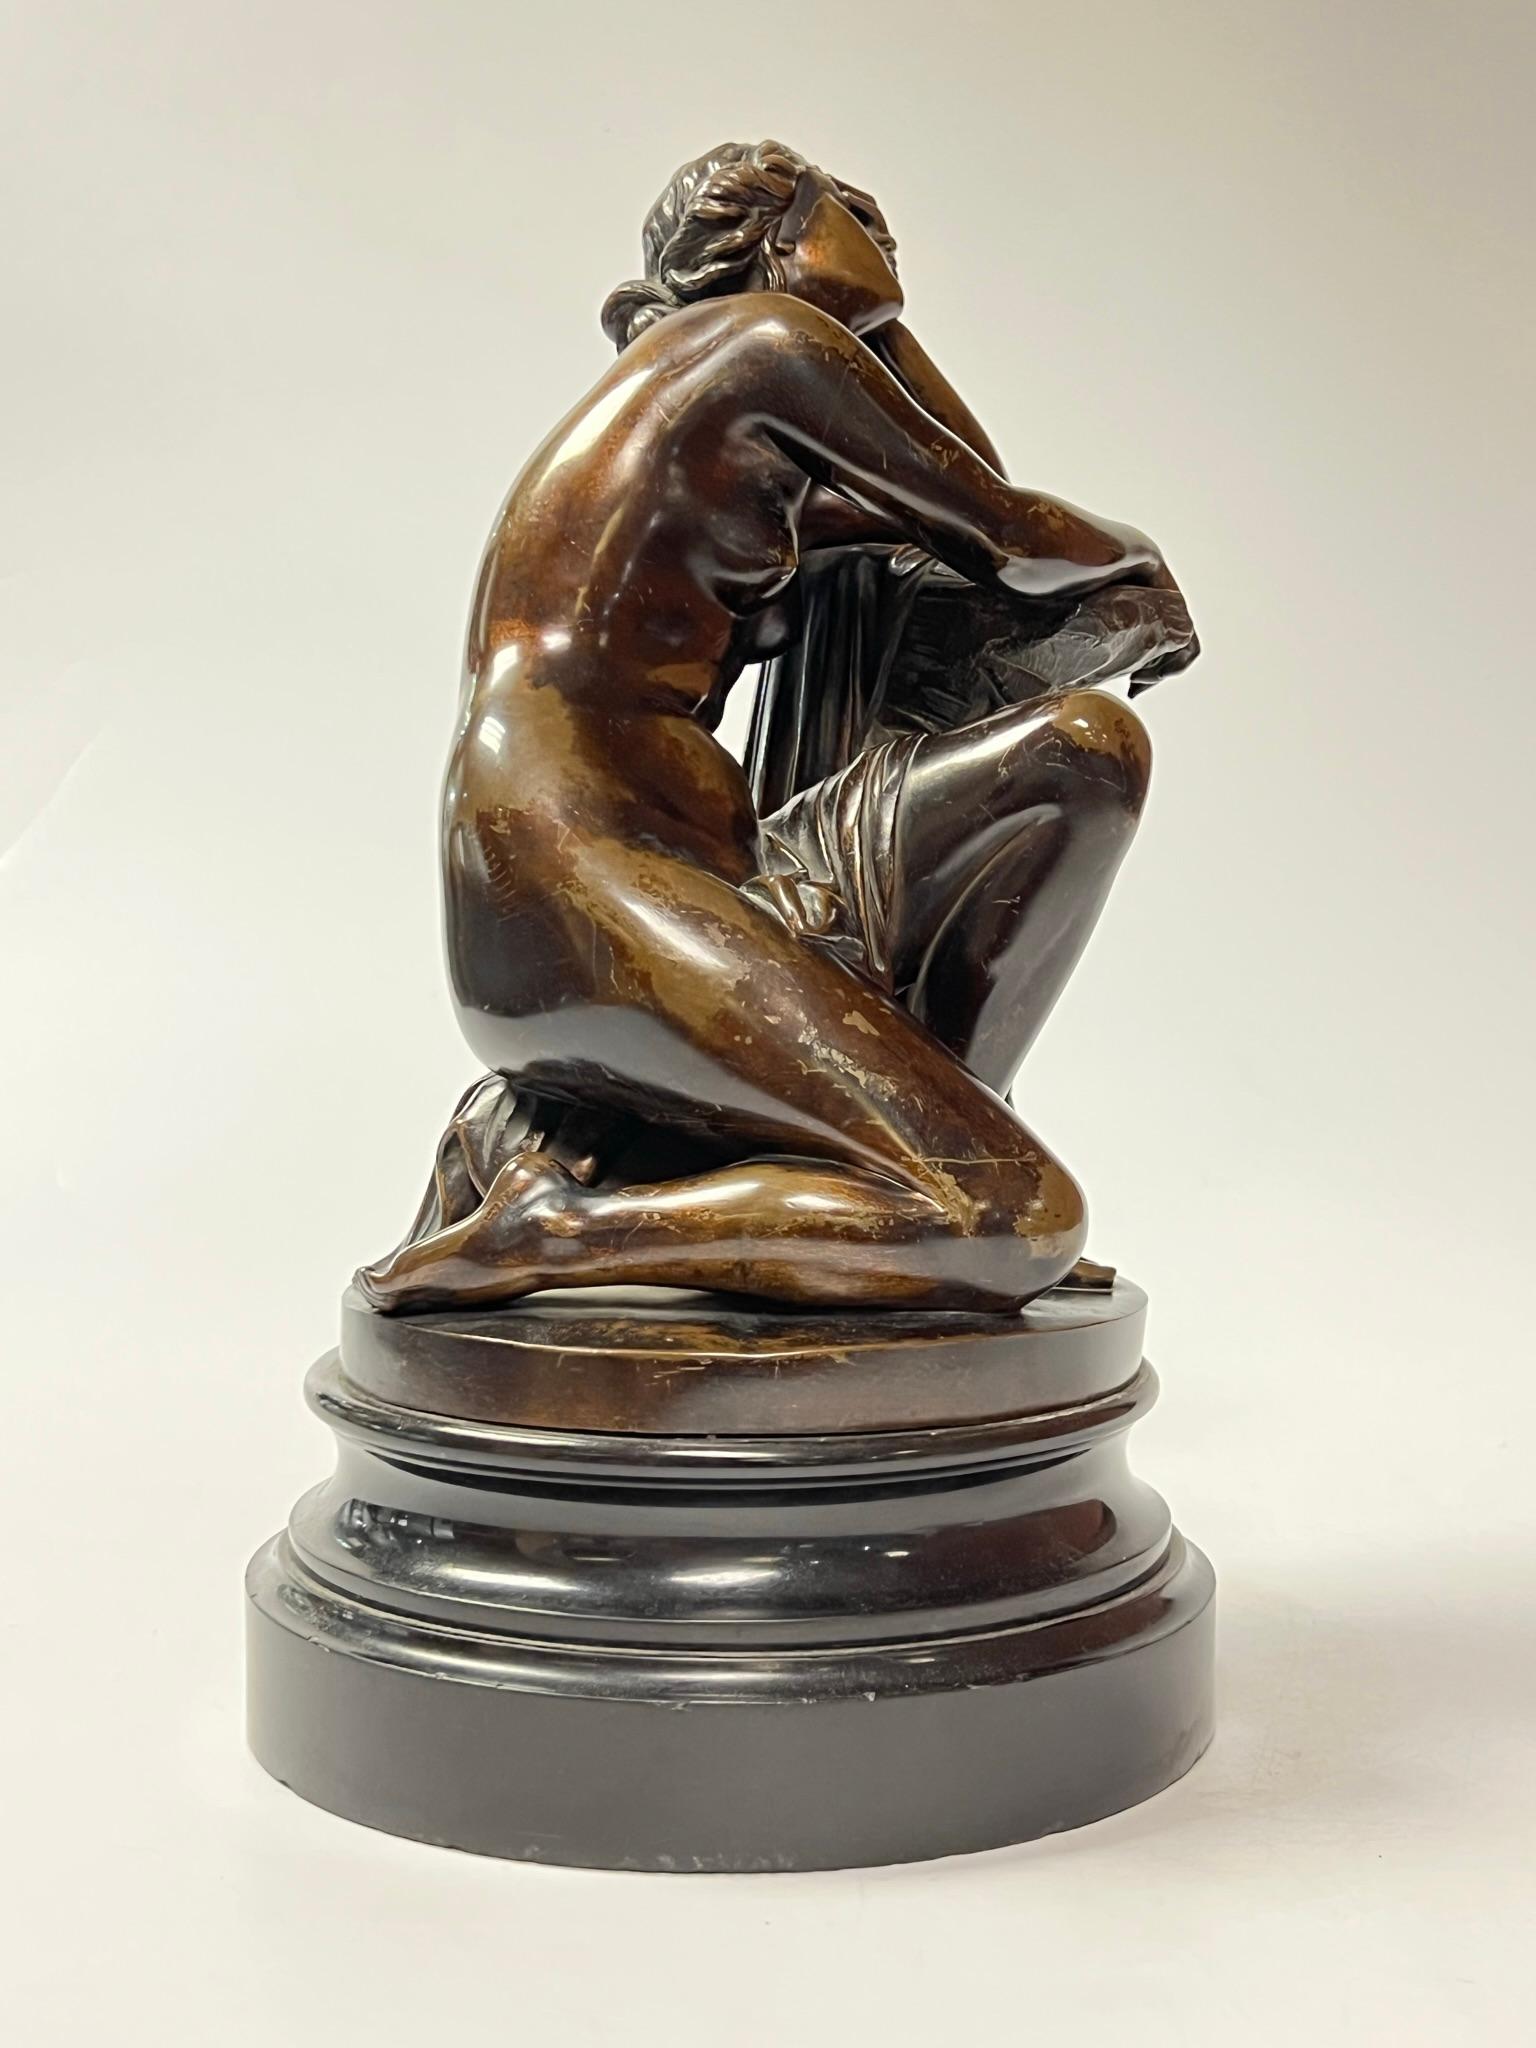 Patinierte Bronzefigur der Ariadne nach Aime Millet (französisch, 1819-1891), montiert auf einem runden Sockel aus geschnitztem Schieferstein.  